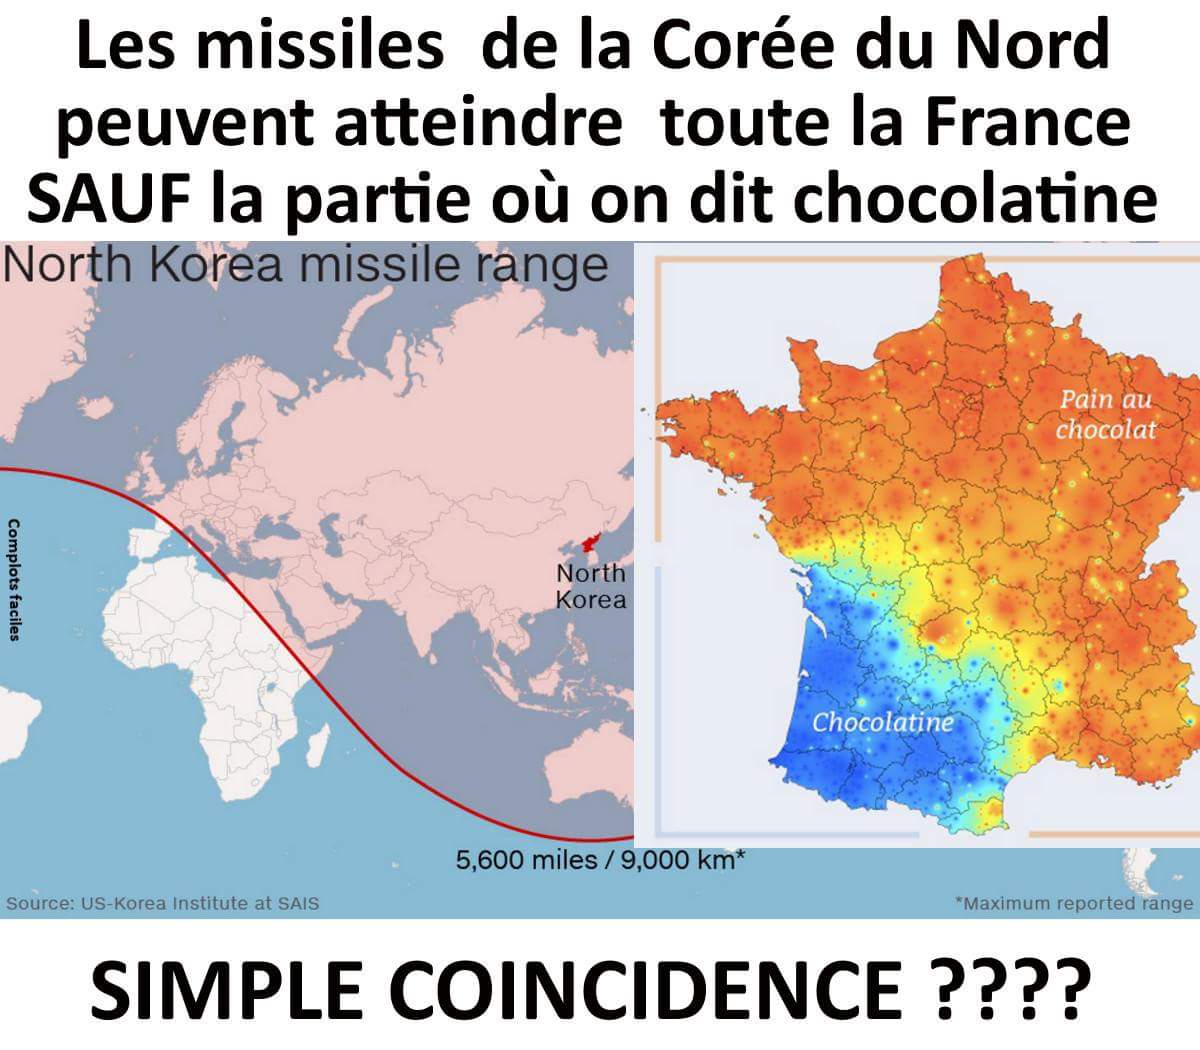 Les missiles de la Corée du Nord peuvent atteindre toute la France sauf la partie où on dit chocolatine, simple coincidence?